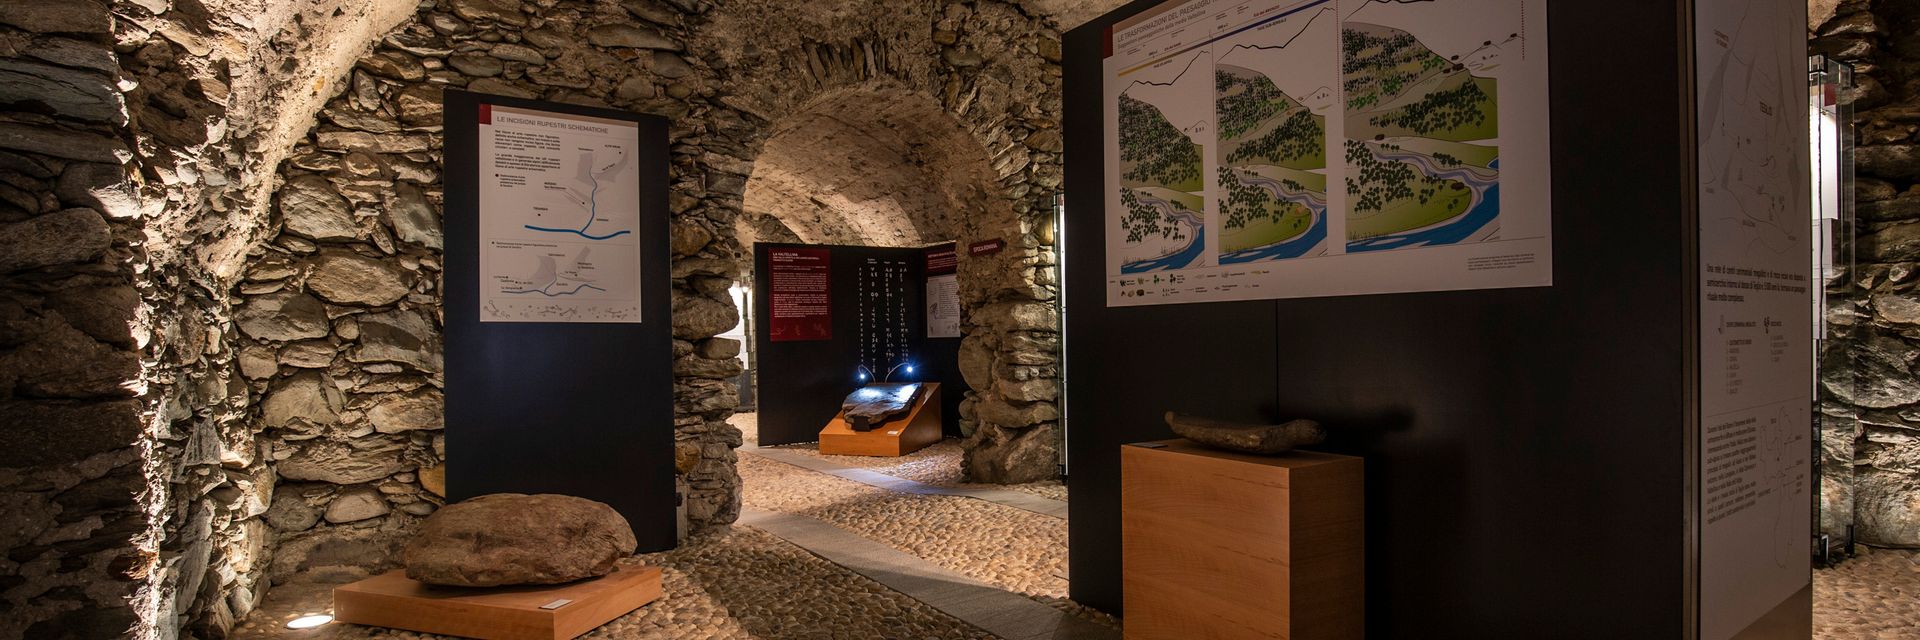 Museo de Historia y Arte Valtellinese